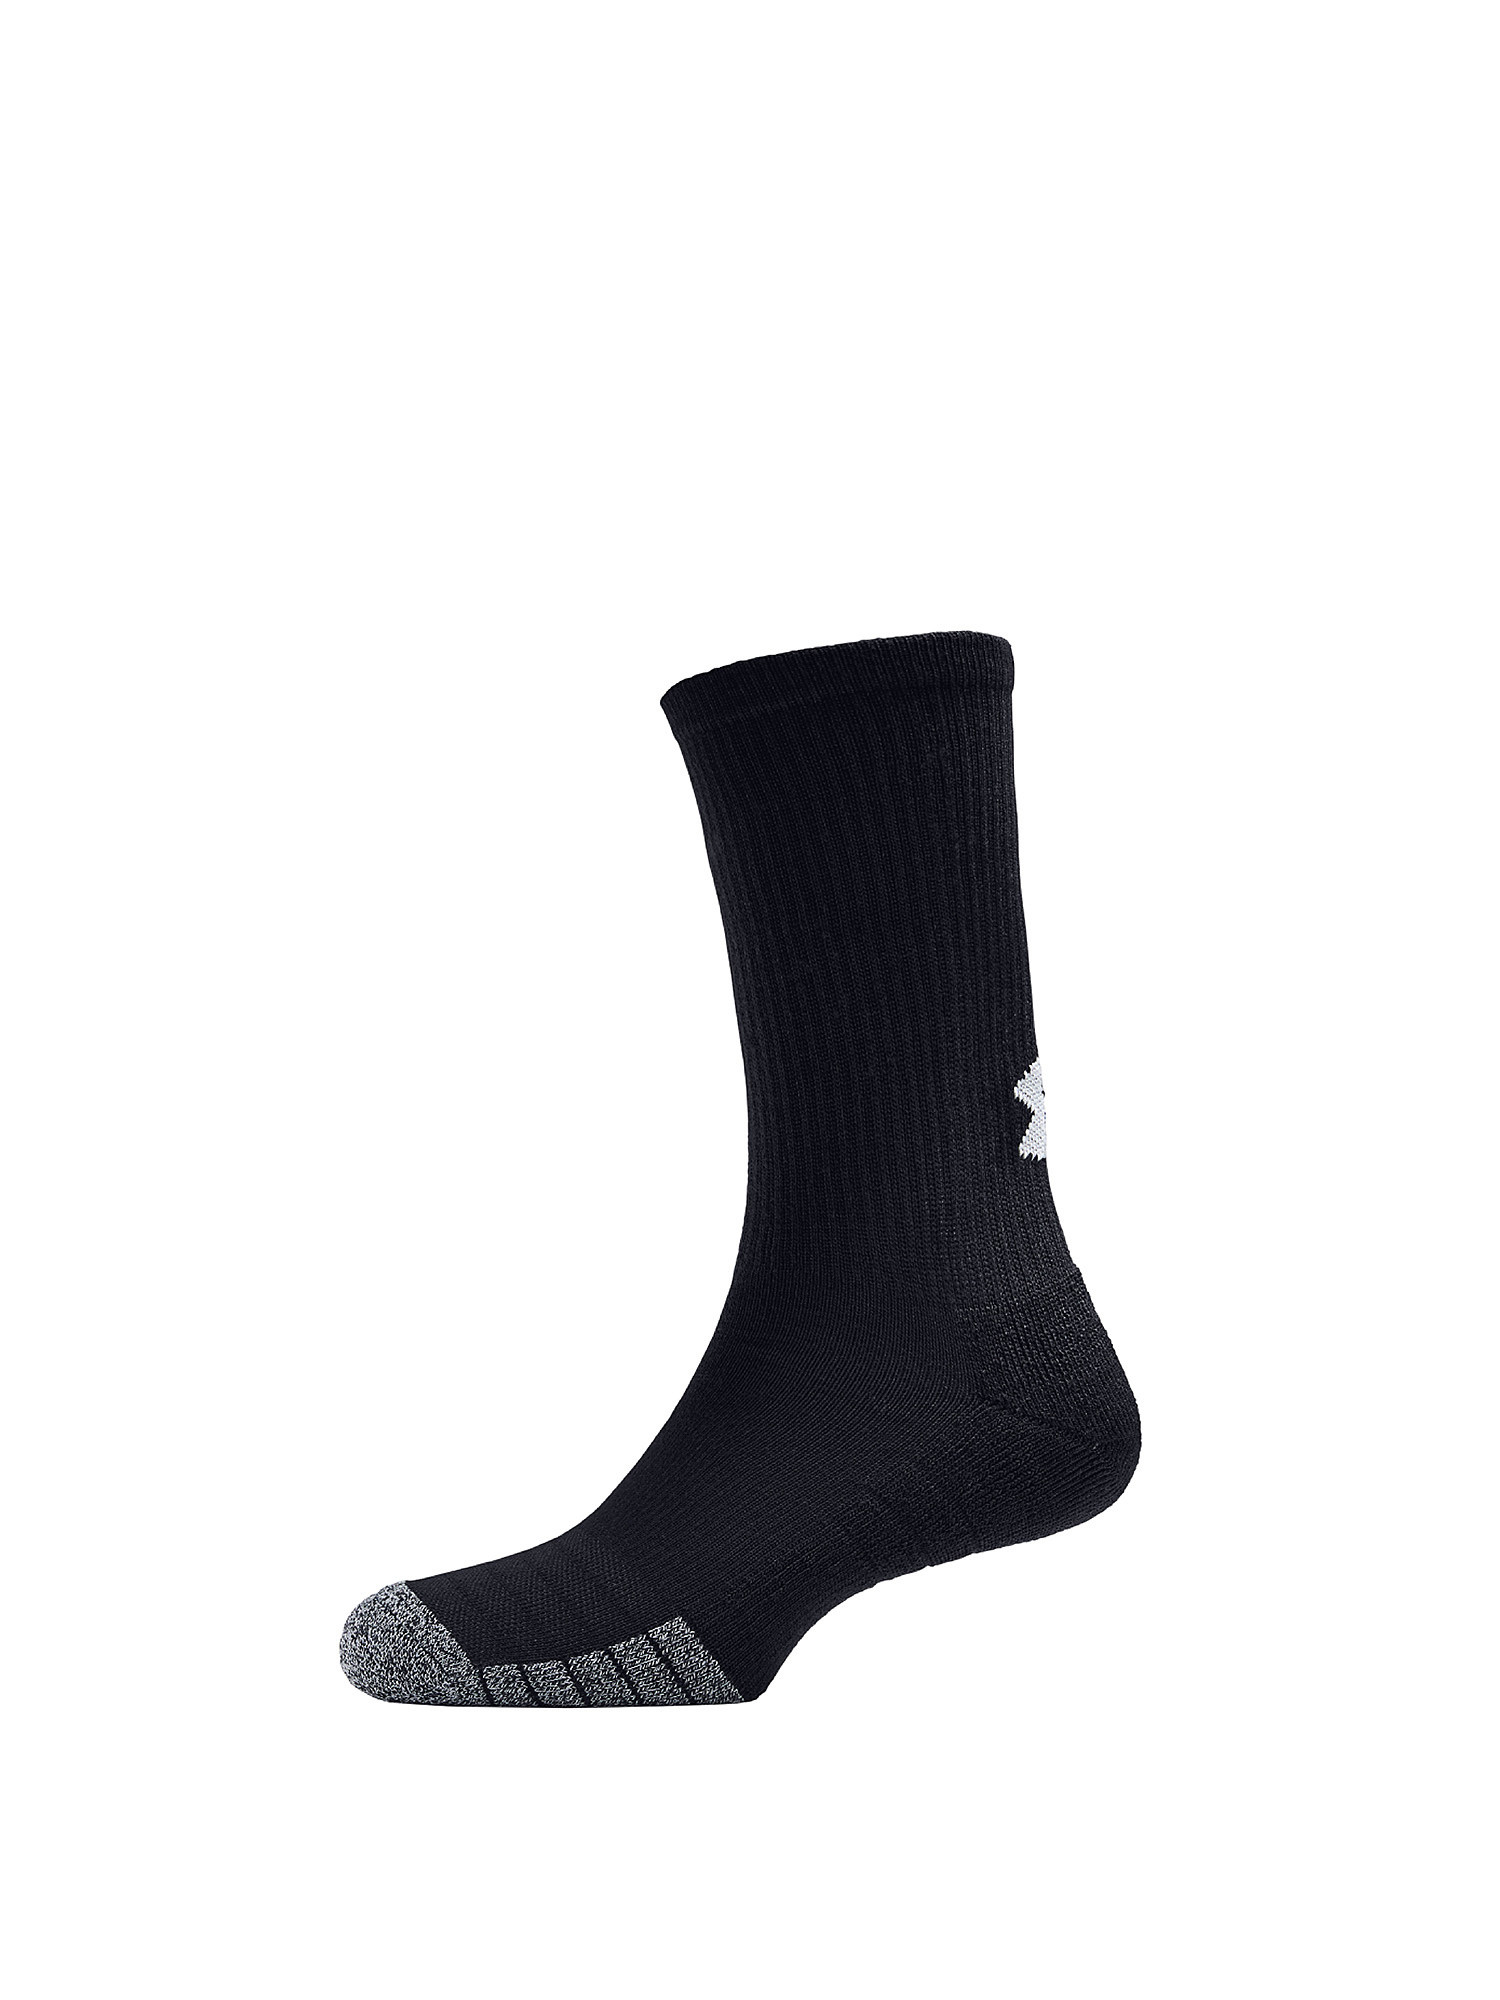 Under Armour - HeatGear® Crew socks, Black, large image number 0